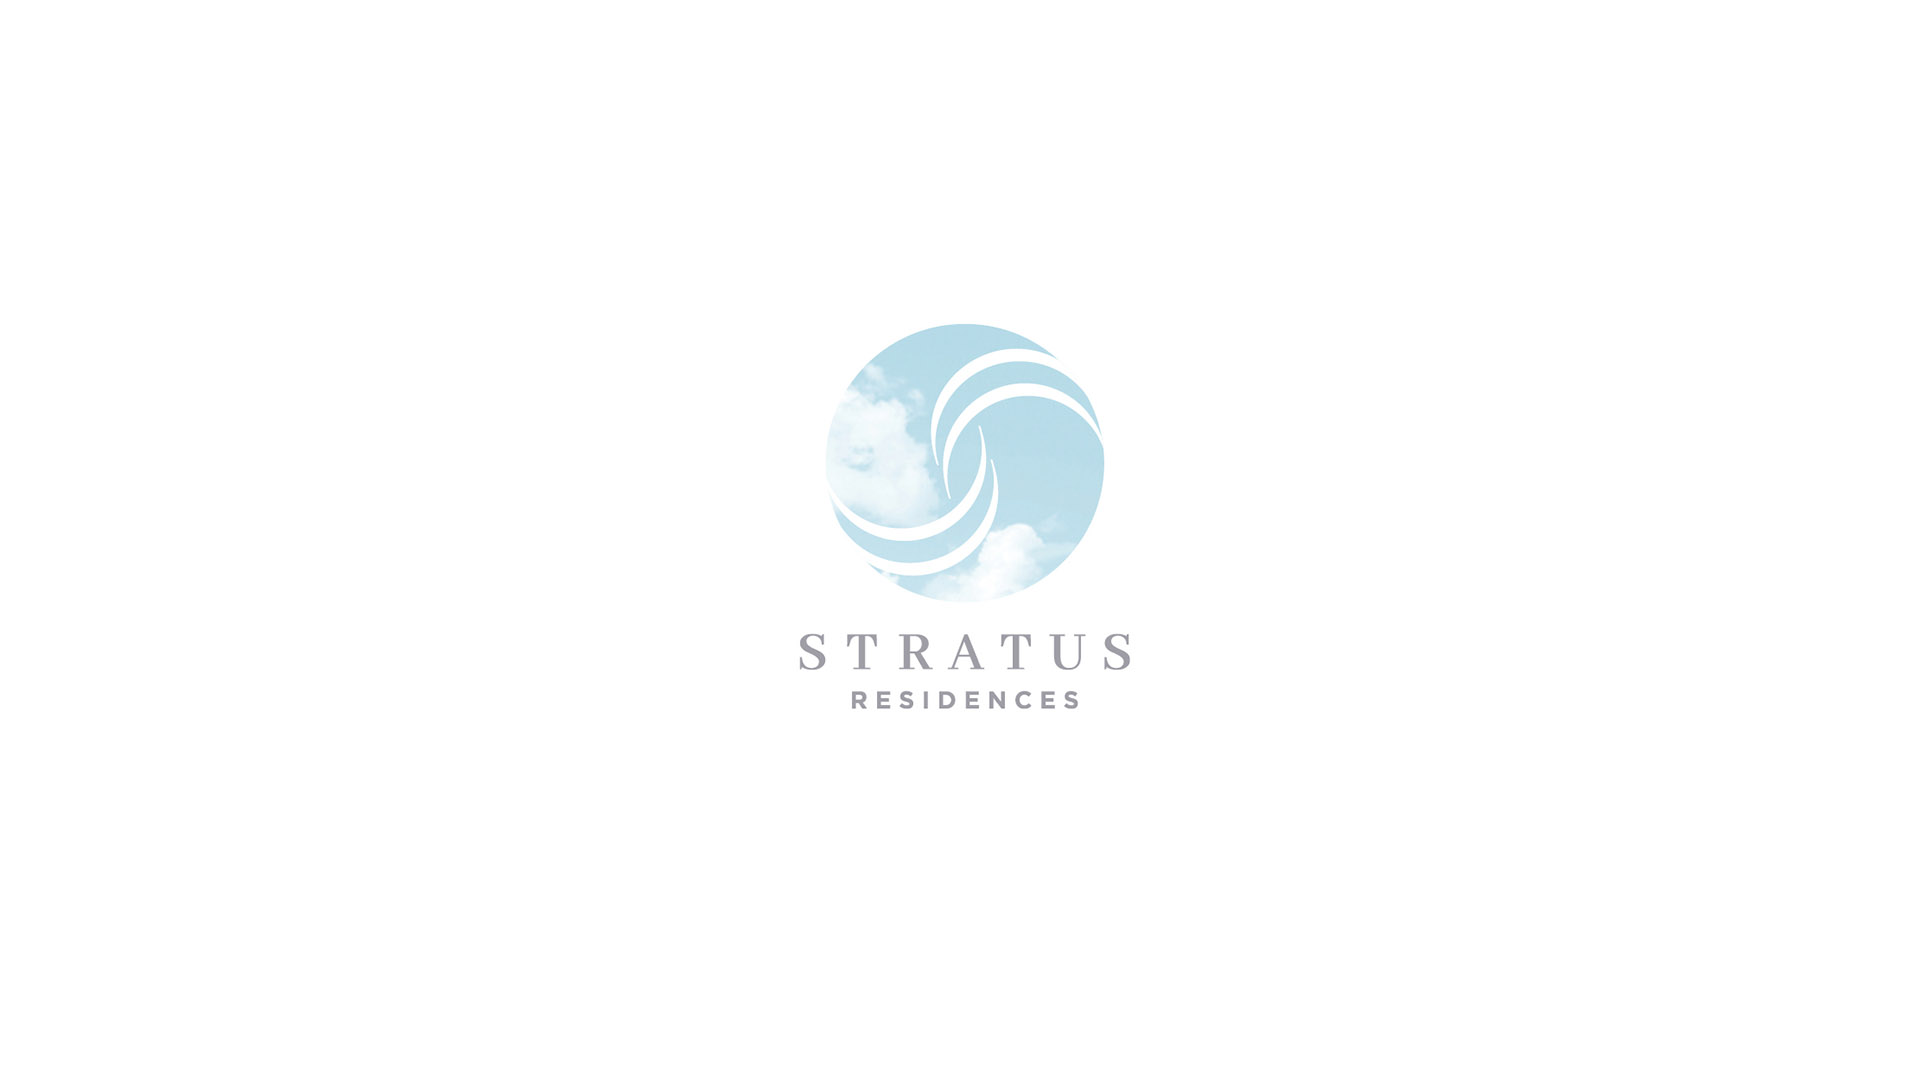 stratus residences logo on white